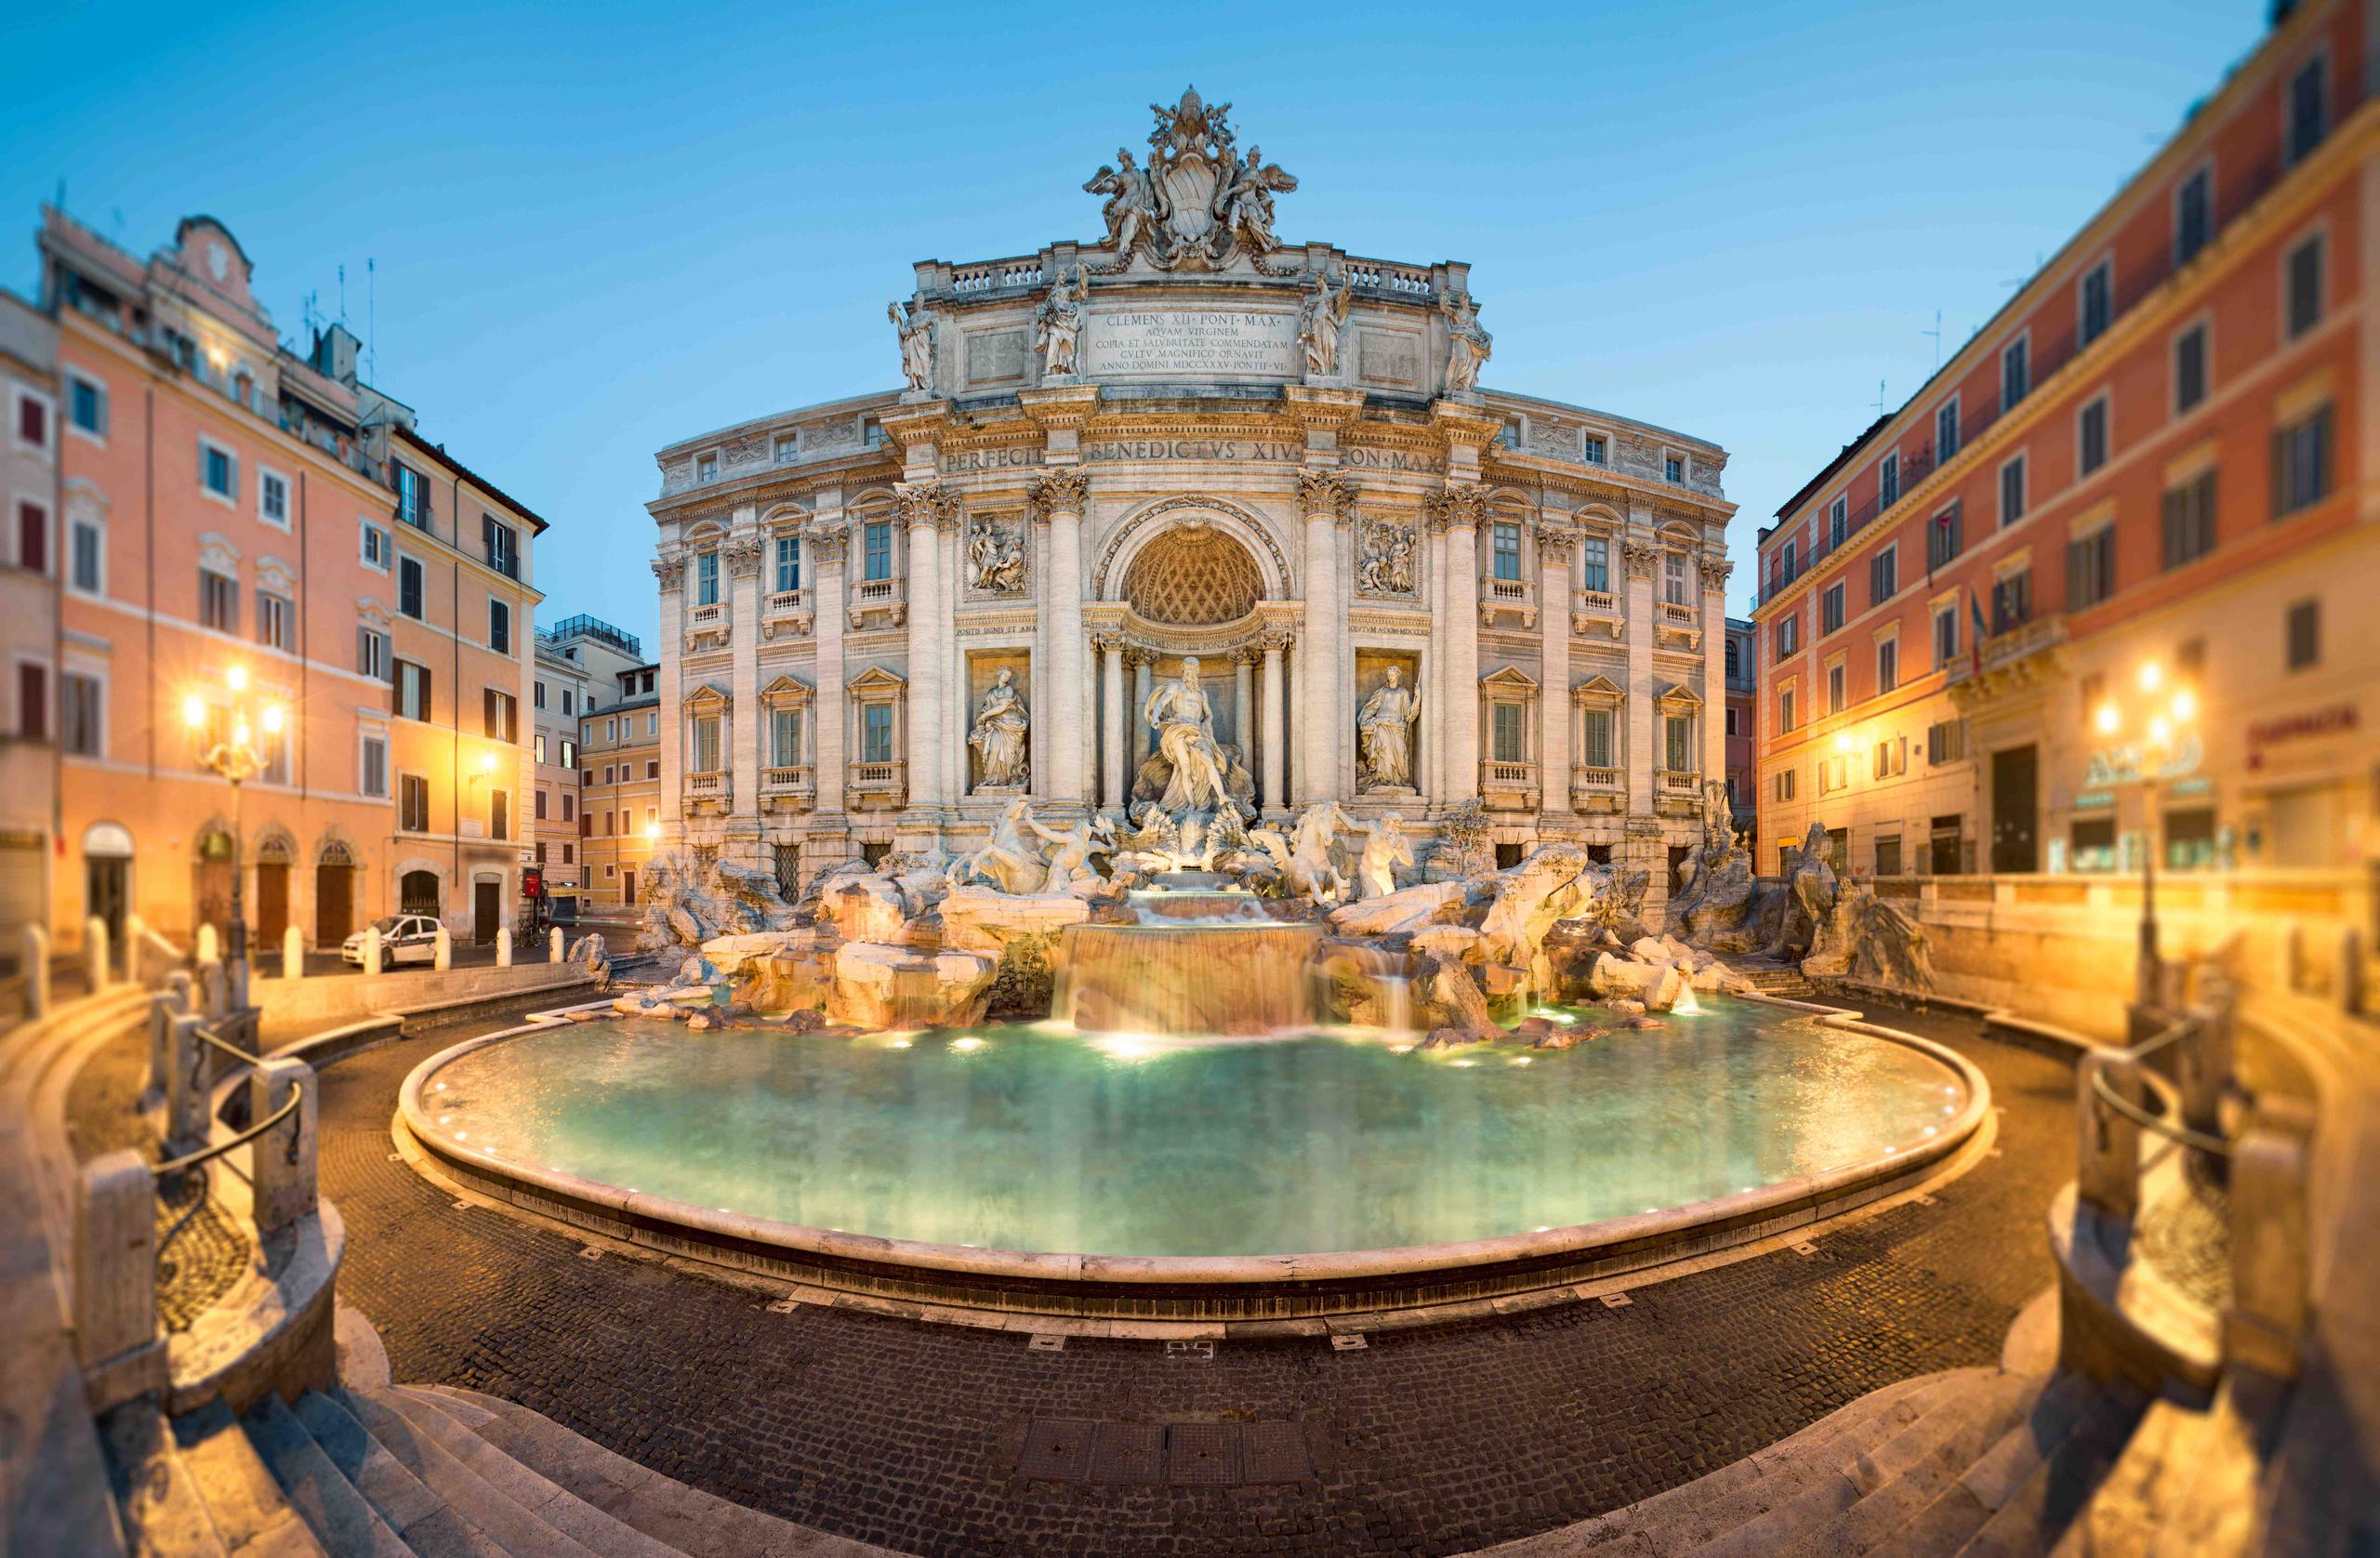 En la Fontana di Trevi se han recogido hasta $ 3,200 en un solo día. (Foto: Shutterstock.com)